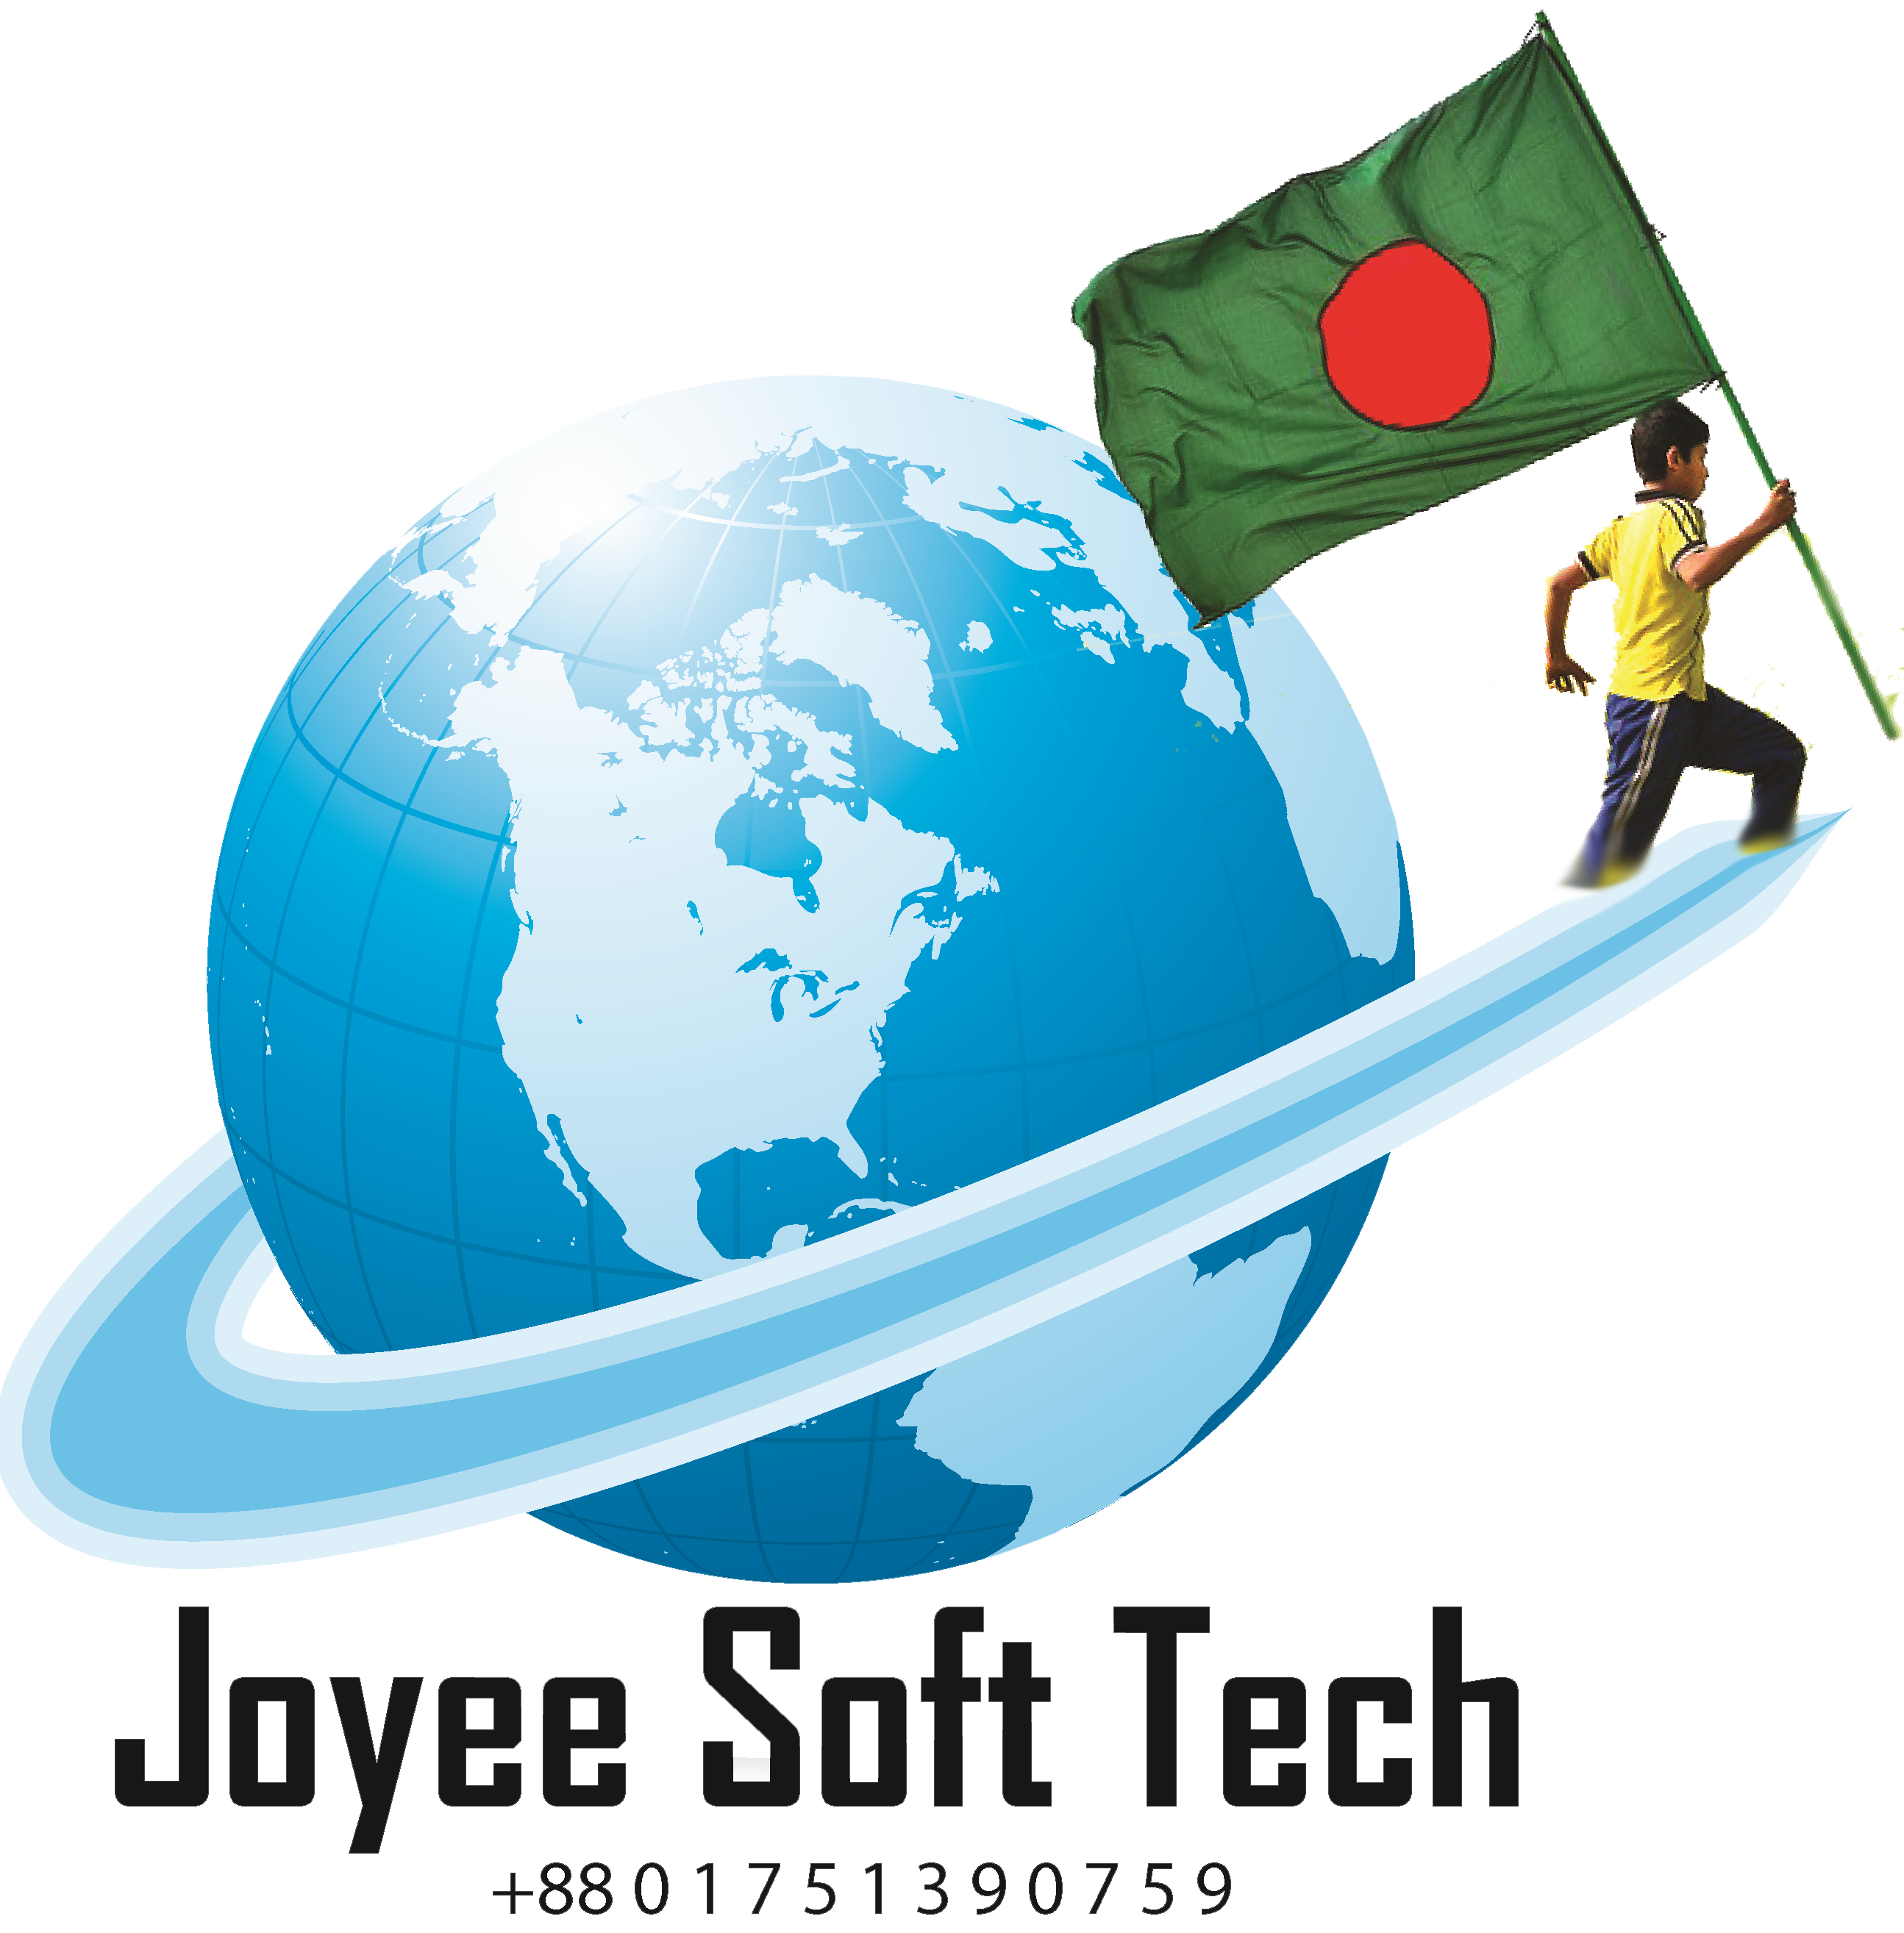 Joyee Soft Tech Company